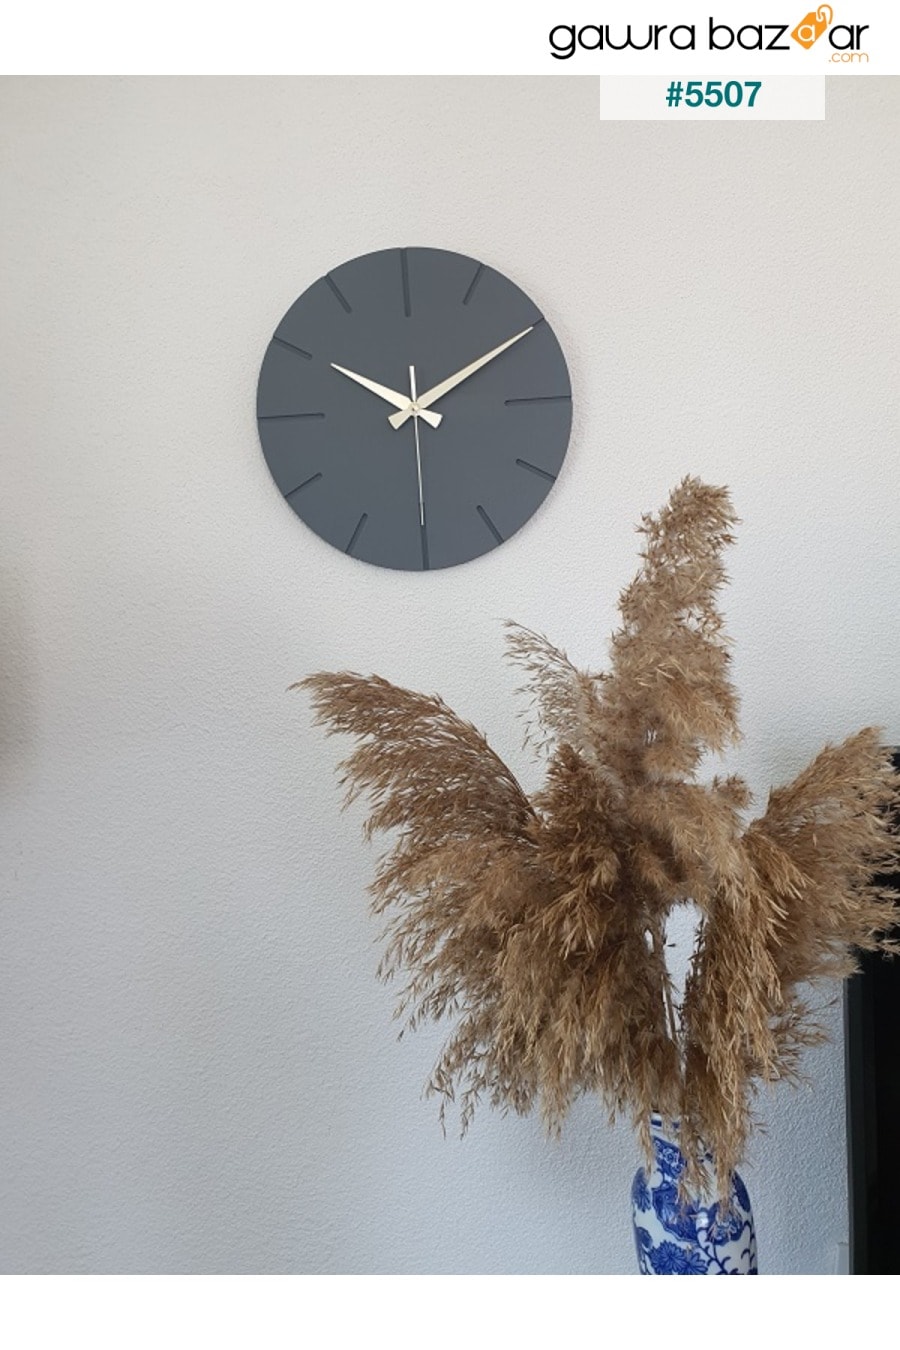 ساعة حائط خشبية مصنوعة يدويًا بتصميم خاص مزخرف 34 X 34 سم كتابات بسيطة باللون الرمادي BAN MOD 5